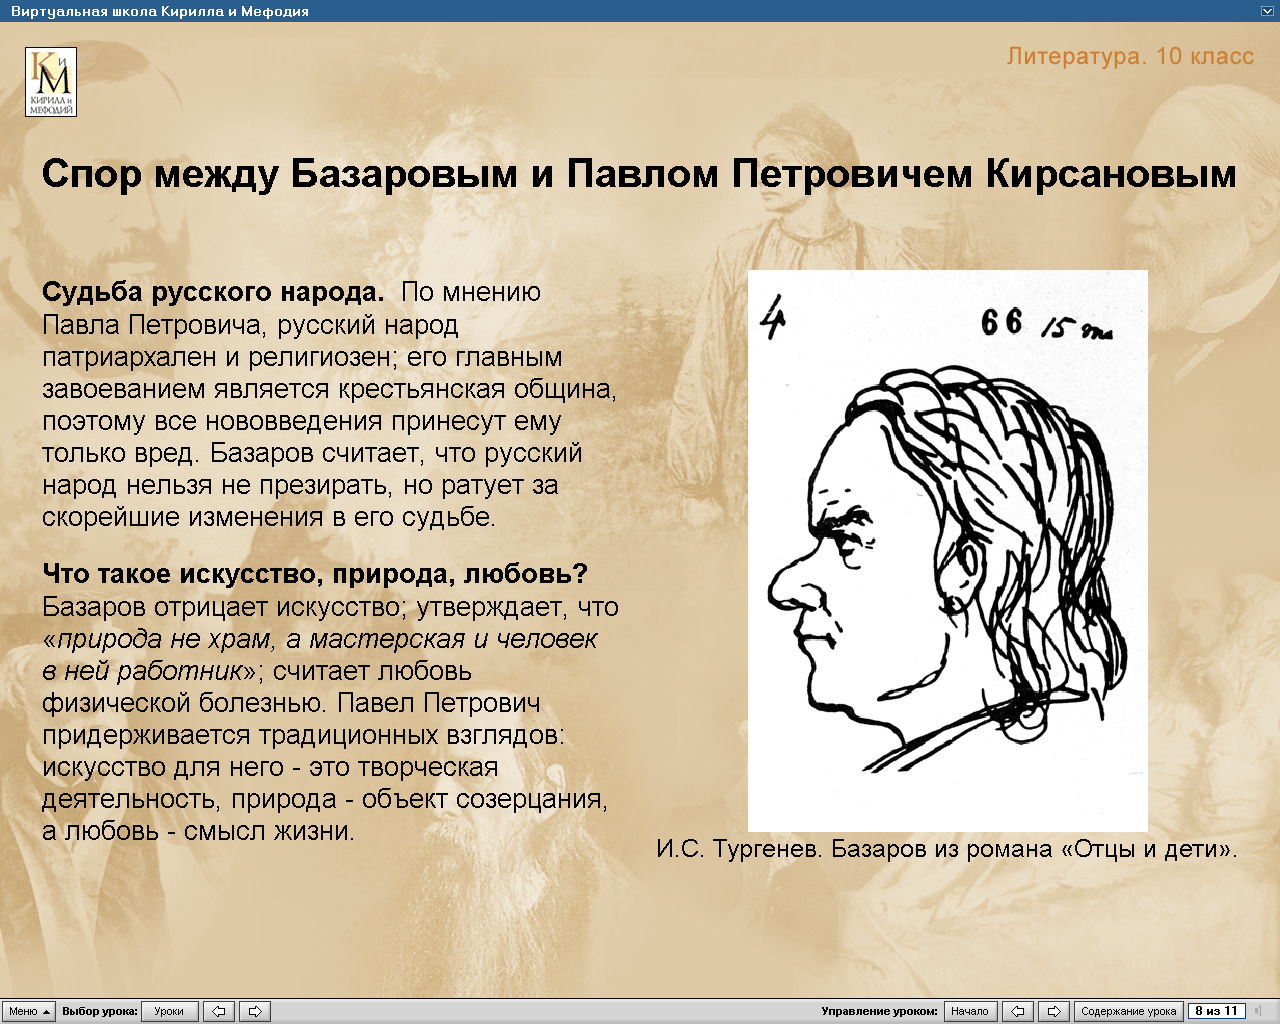 Сочинение: Почему И. С. Тургенев назвал Базарова лицом трагическим